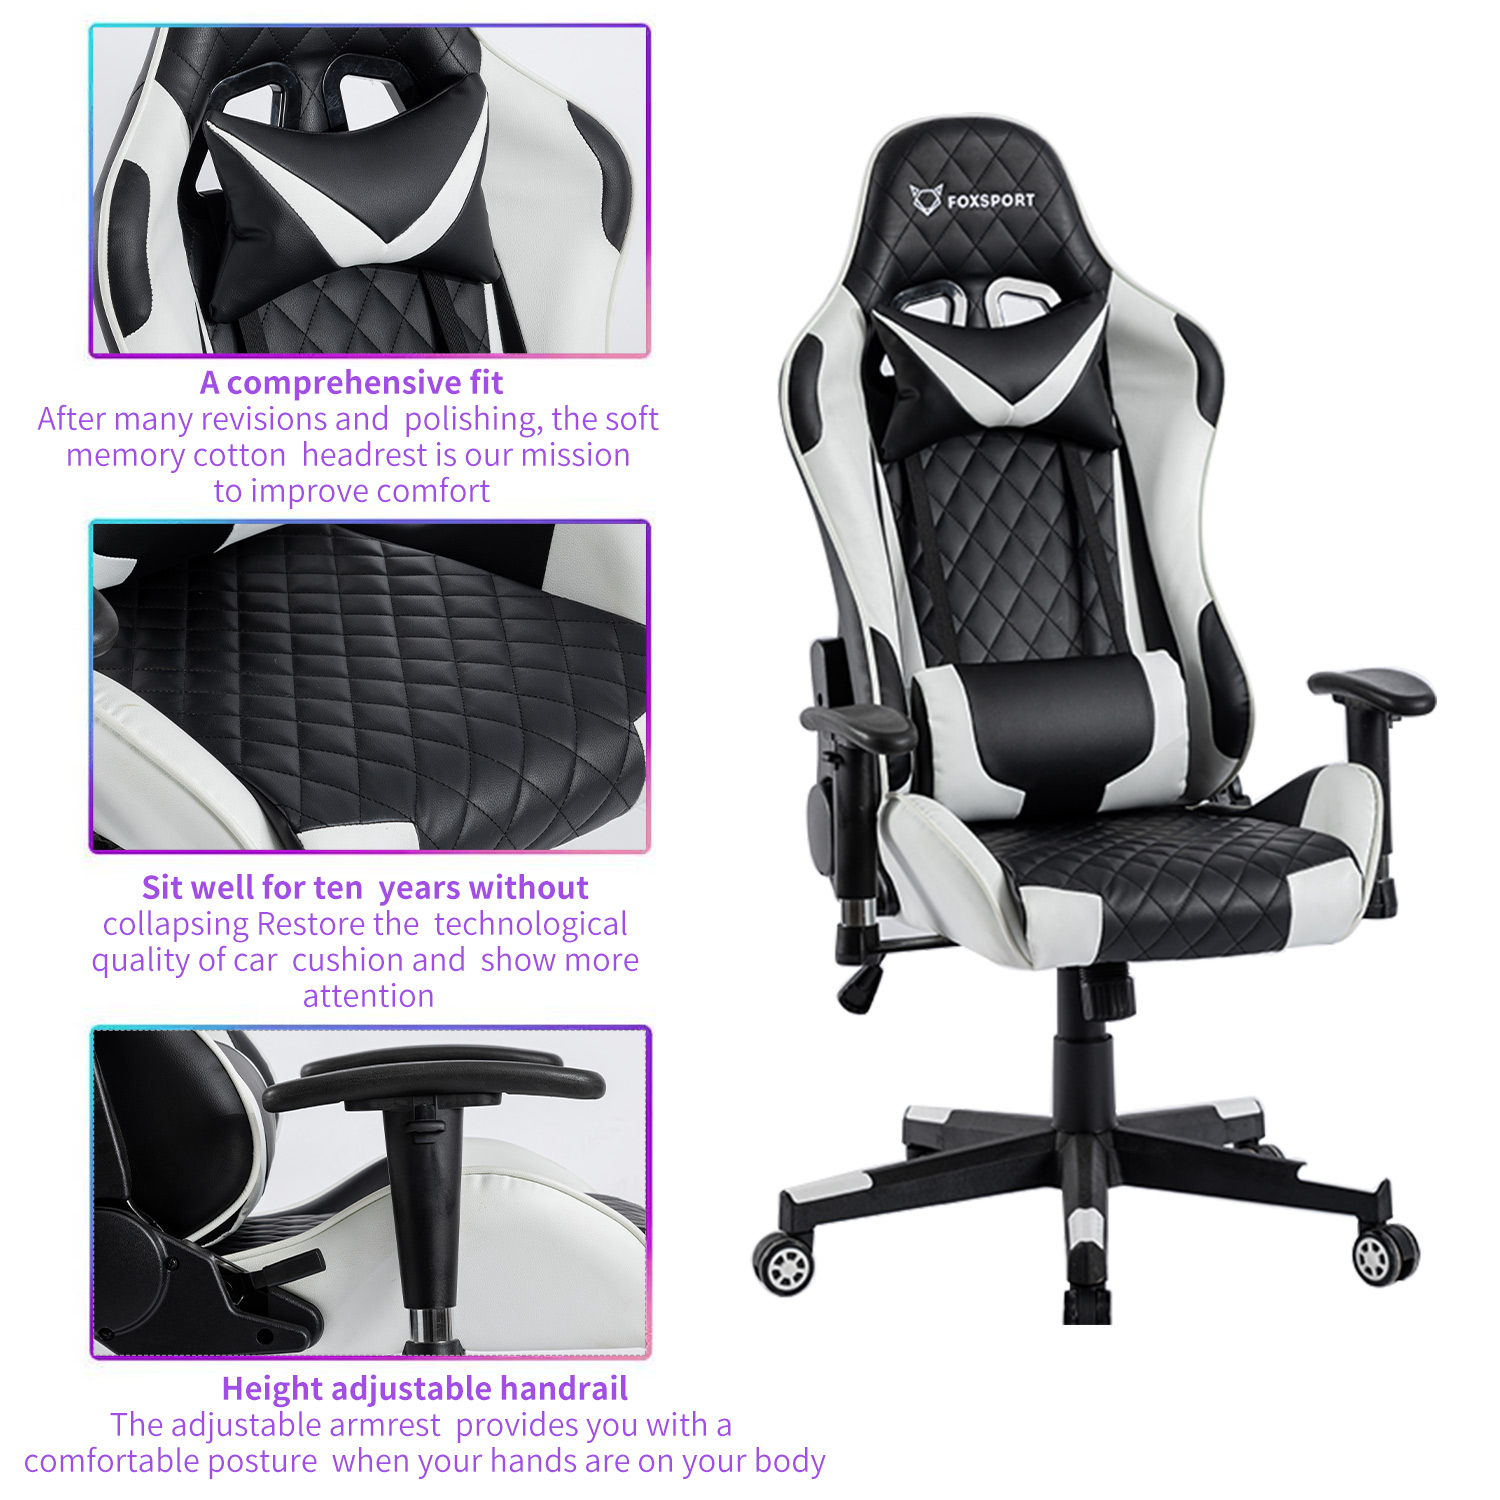 FOXSPORT Professioneller Stuhl, Gaming Taillenkissen, mit Kopfstütze Schwarz/Weiß und Bürostuhl, weiß Gaming-Stuhl